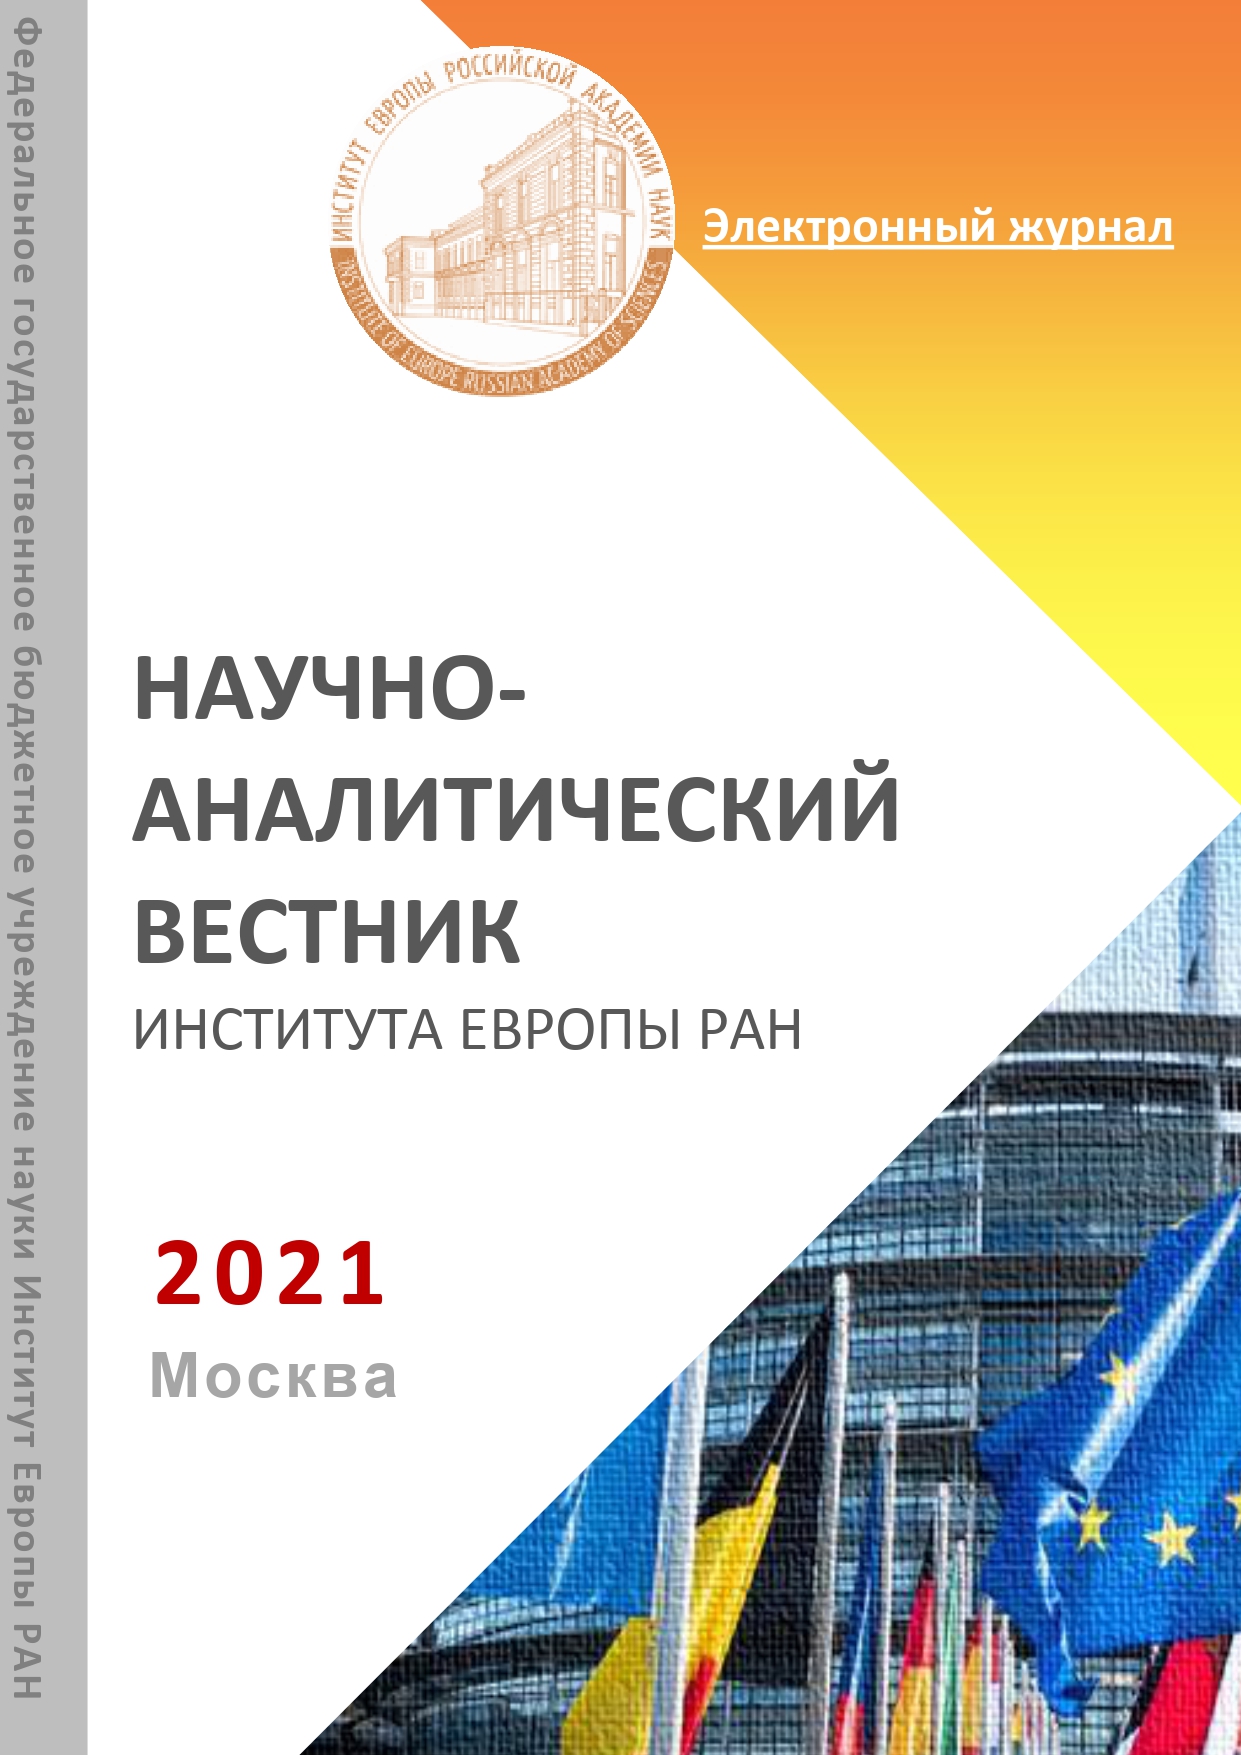 cover vestnik 2020